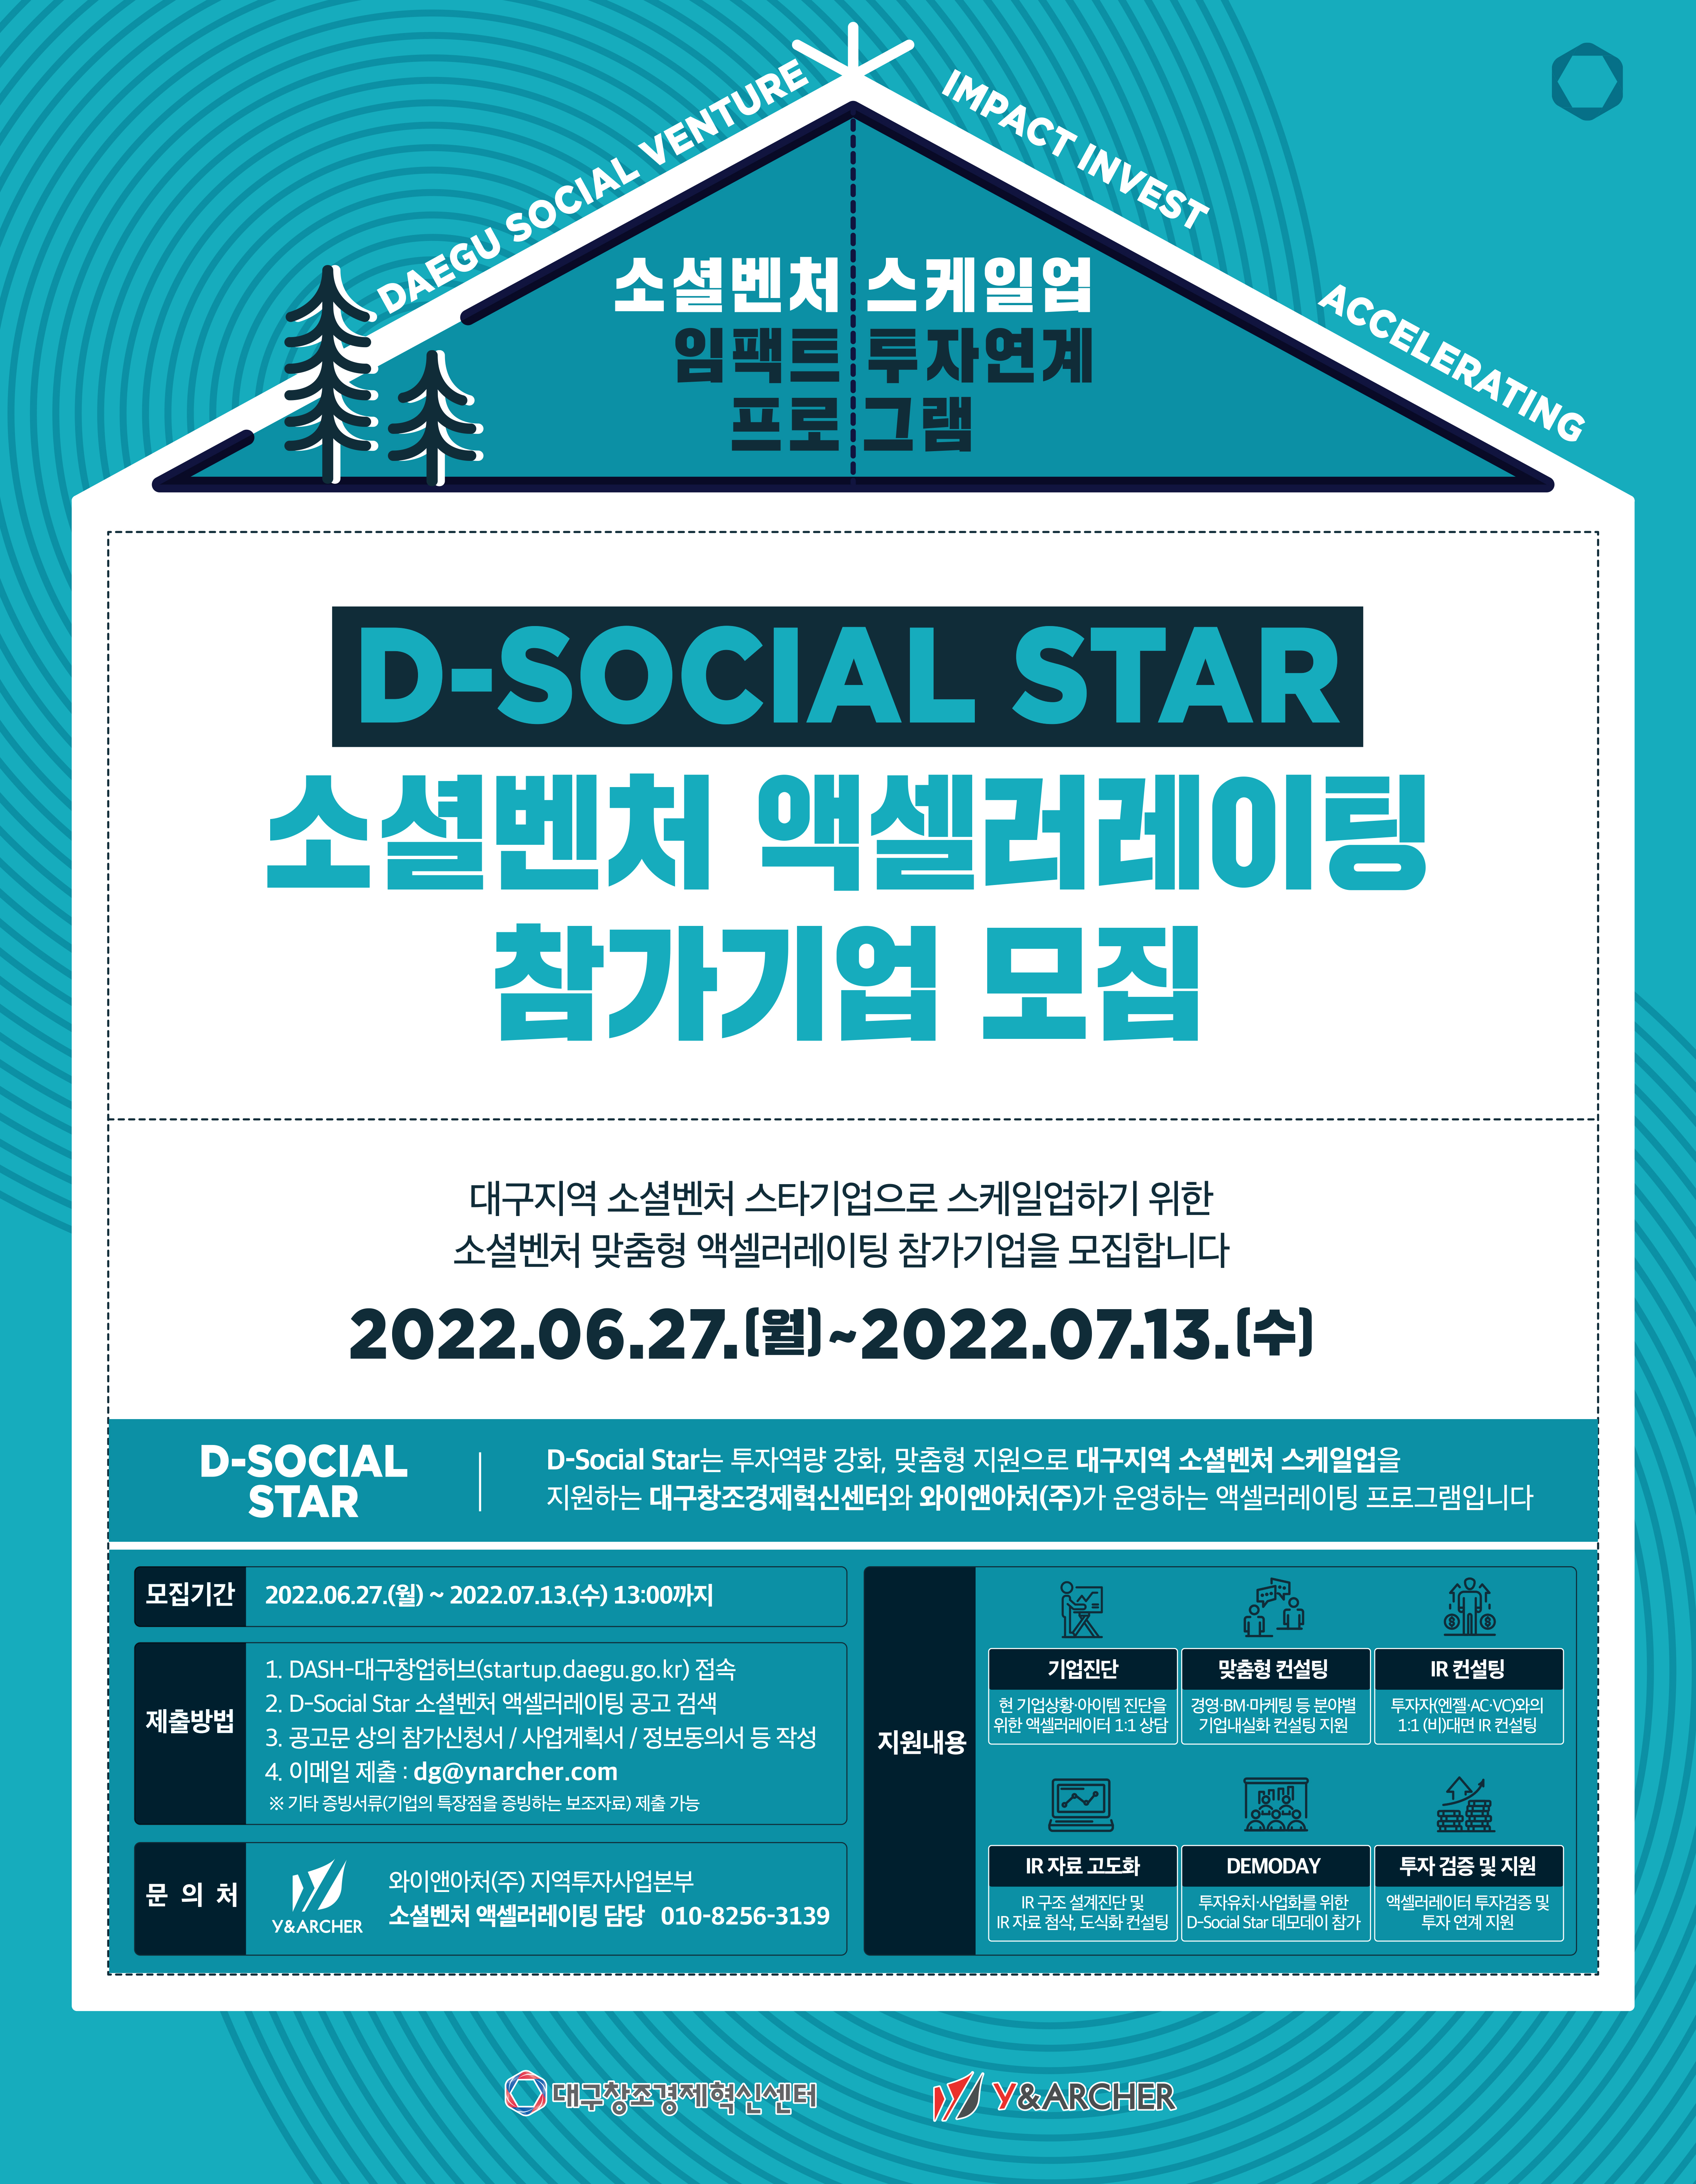 소셜벤처 스케일업 임팩트 투자연계 프로그램 ‘D-Social Star’ 참가 기업 모집 